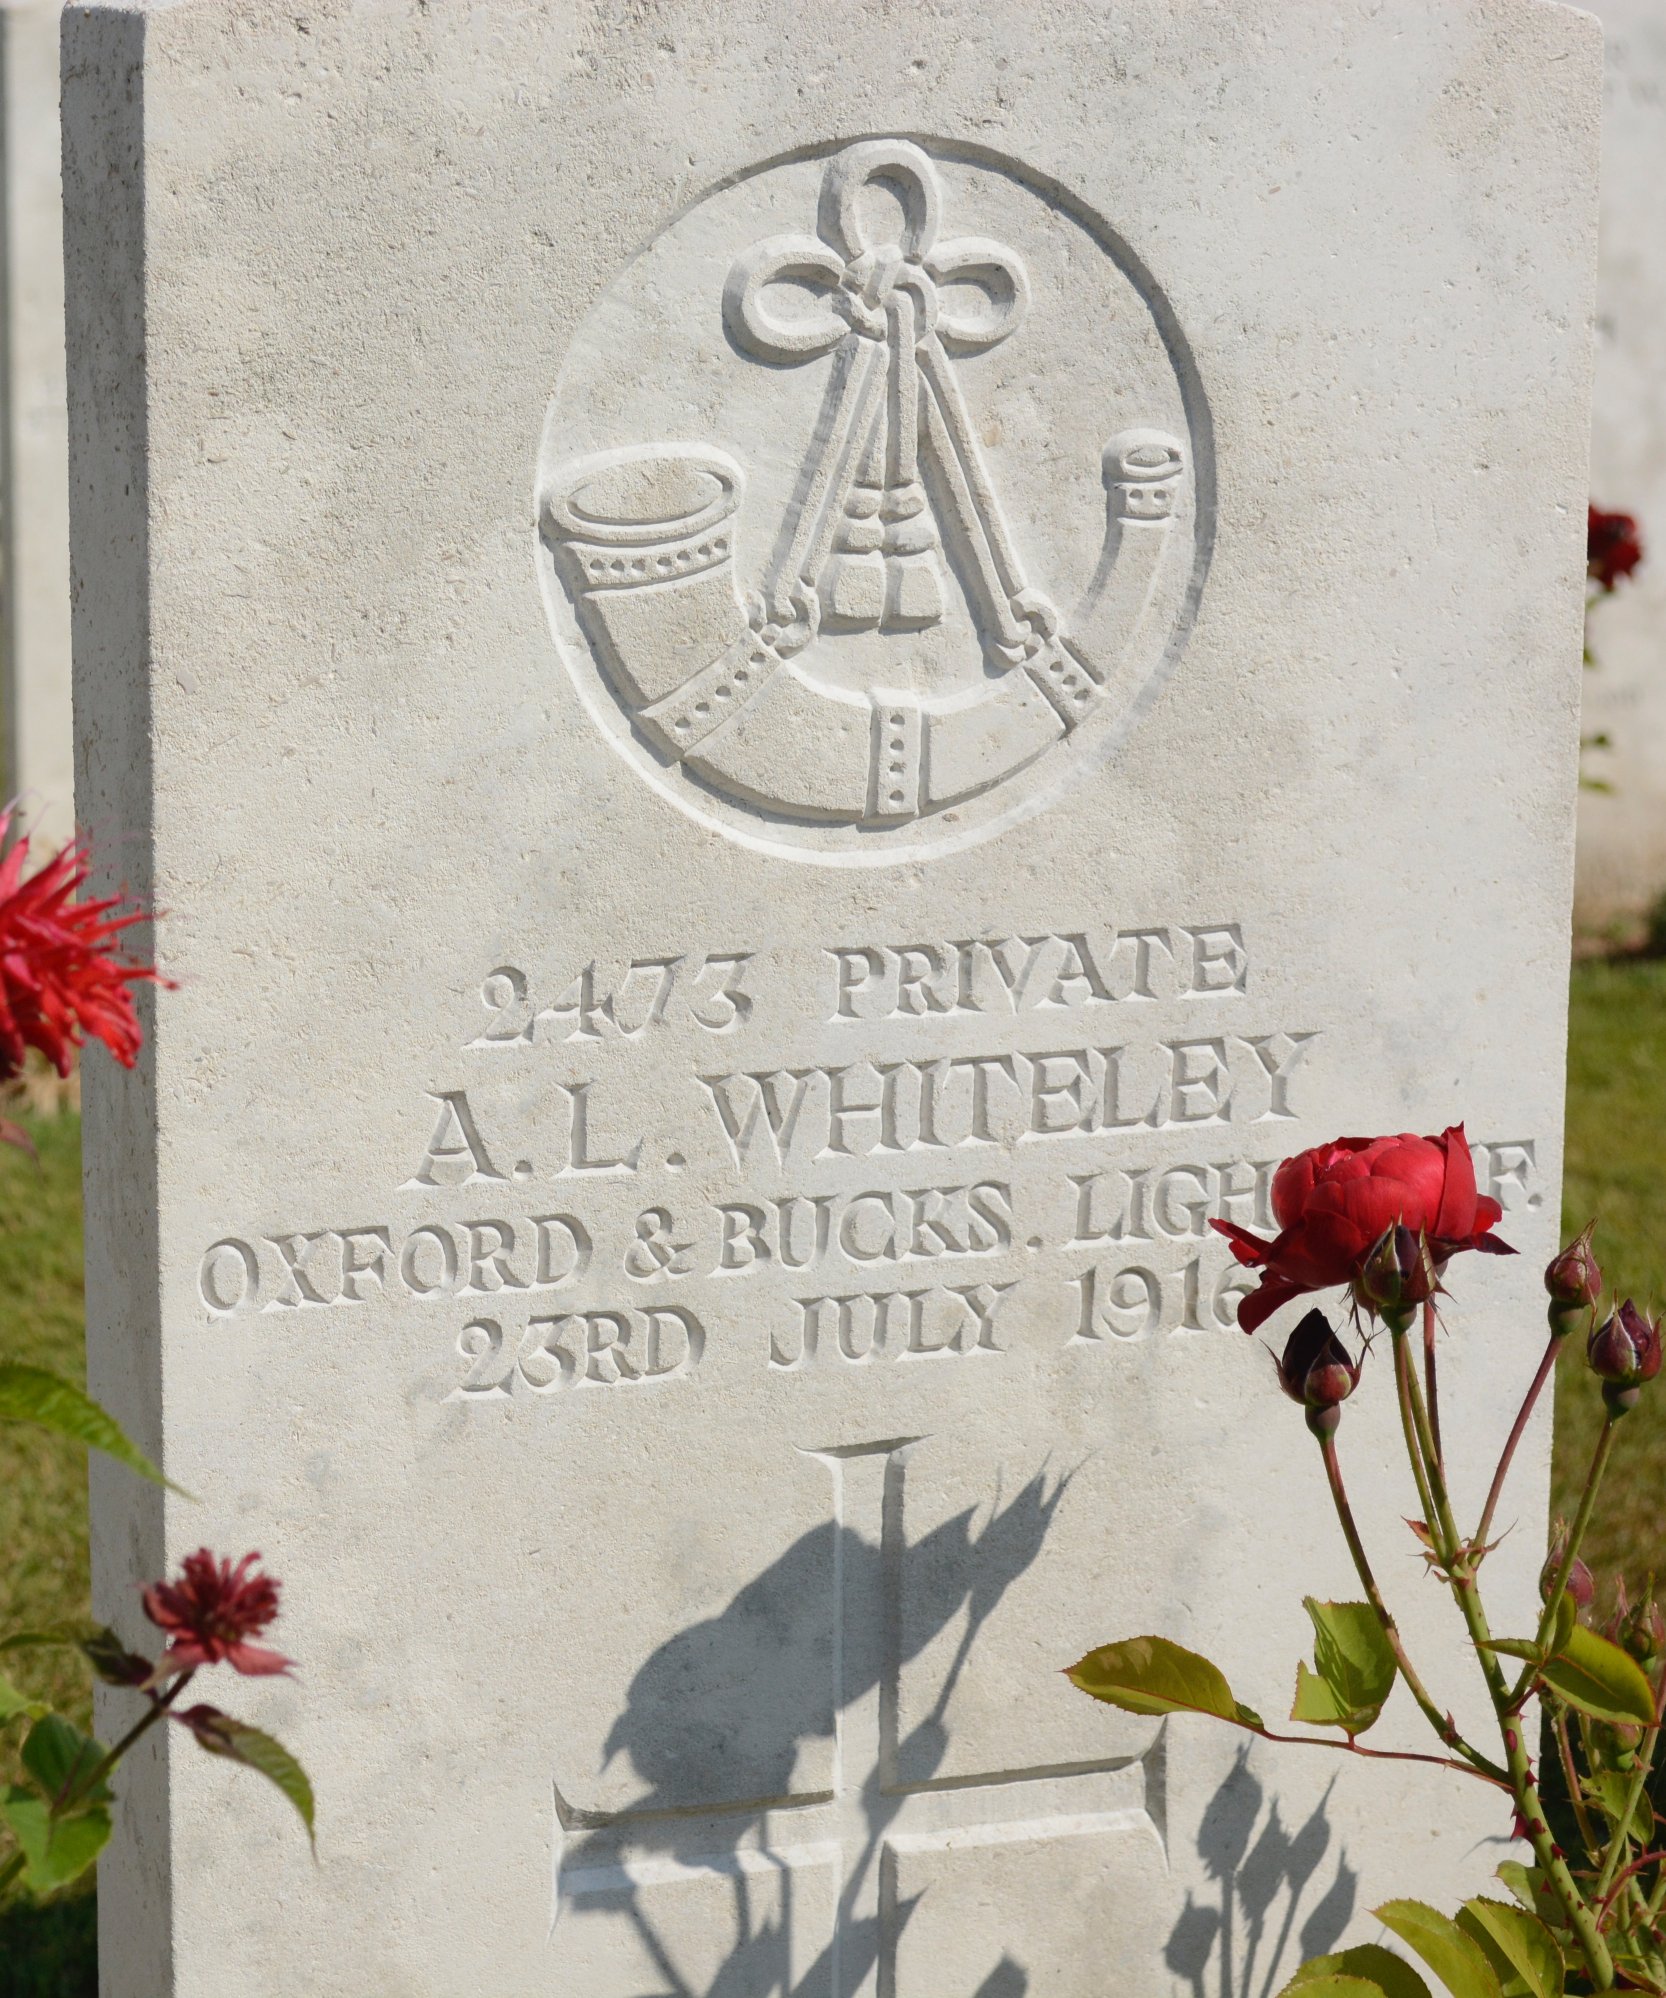 Arthur WHITELEY Pozieres British Cemetery Simon Haynes 2015 cropped smaller